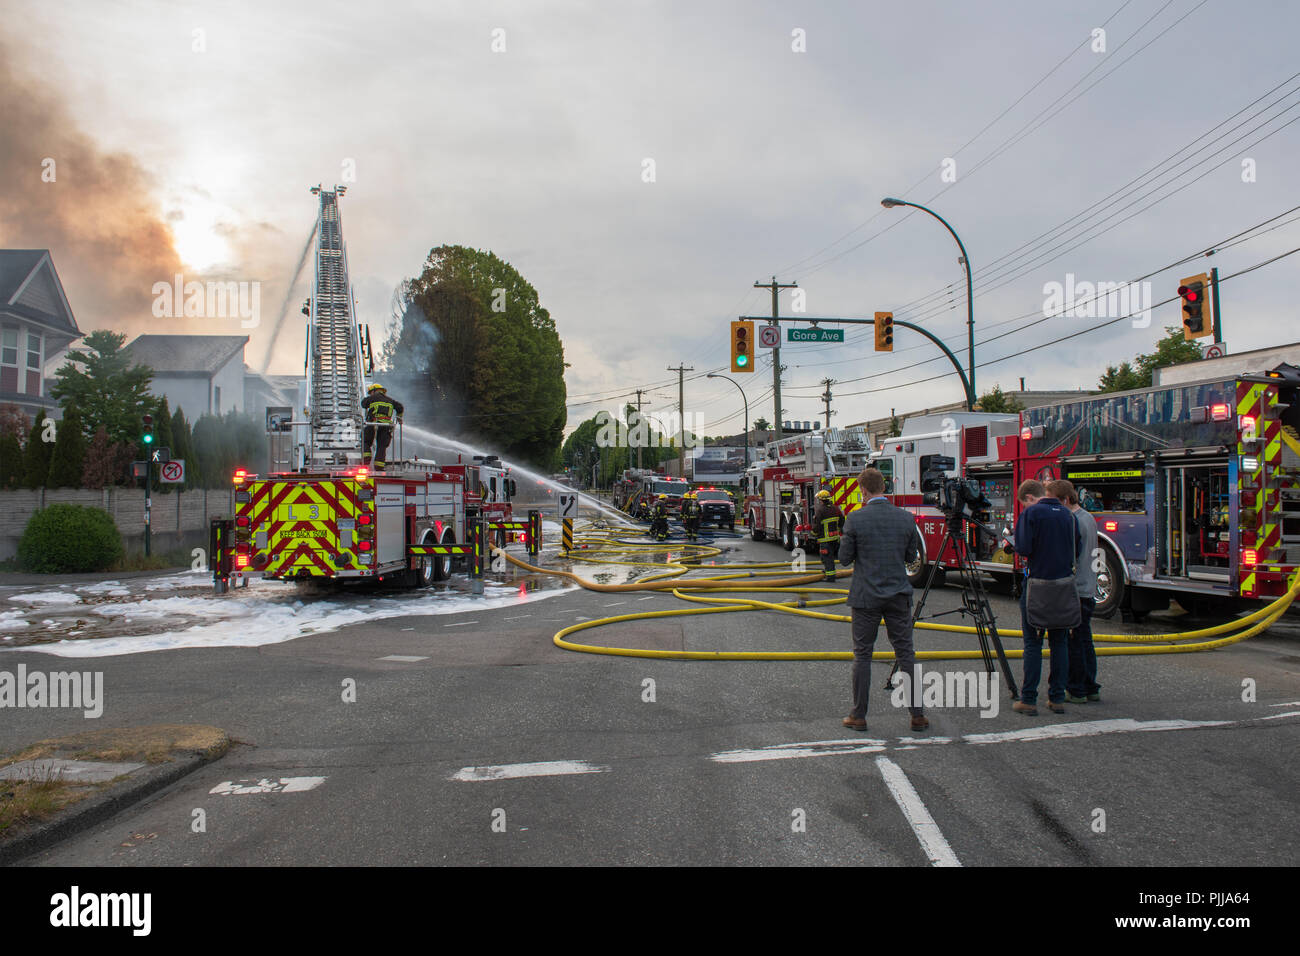 Reporter im Vordergrund der Berichterstattung über die Löschfahrzeuge und feuerwehrleute an der Szene eines Hauses Feuer, Vancouver city. Stockfoto